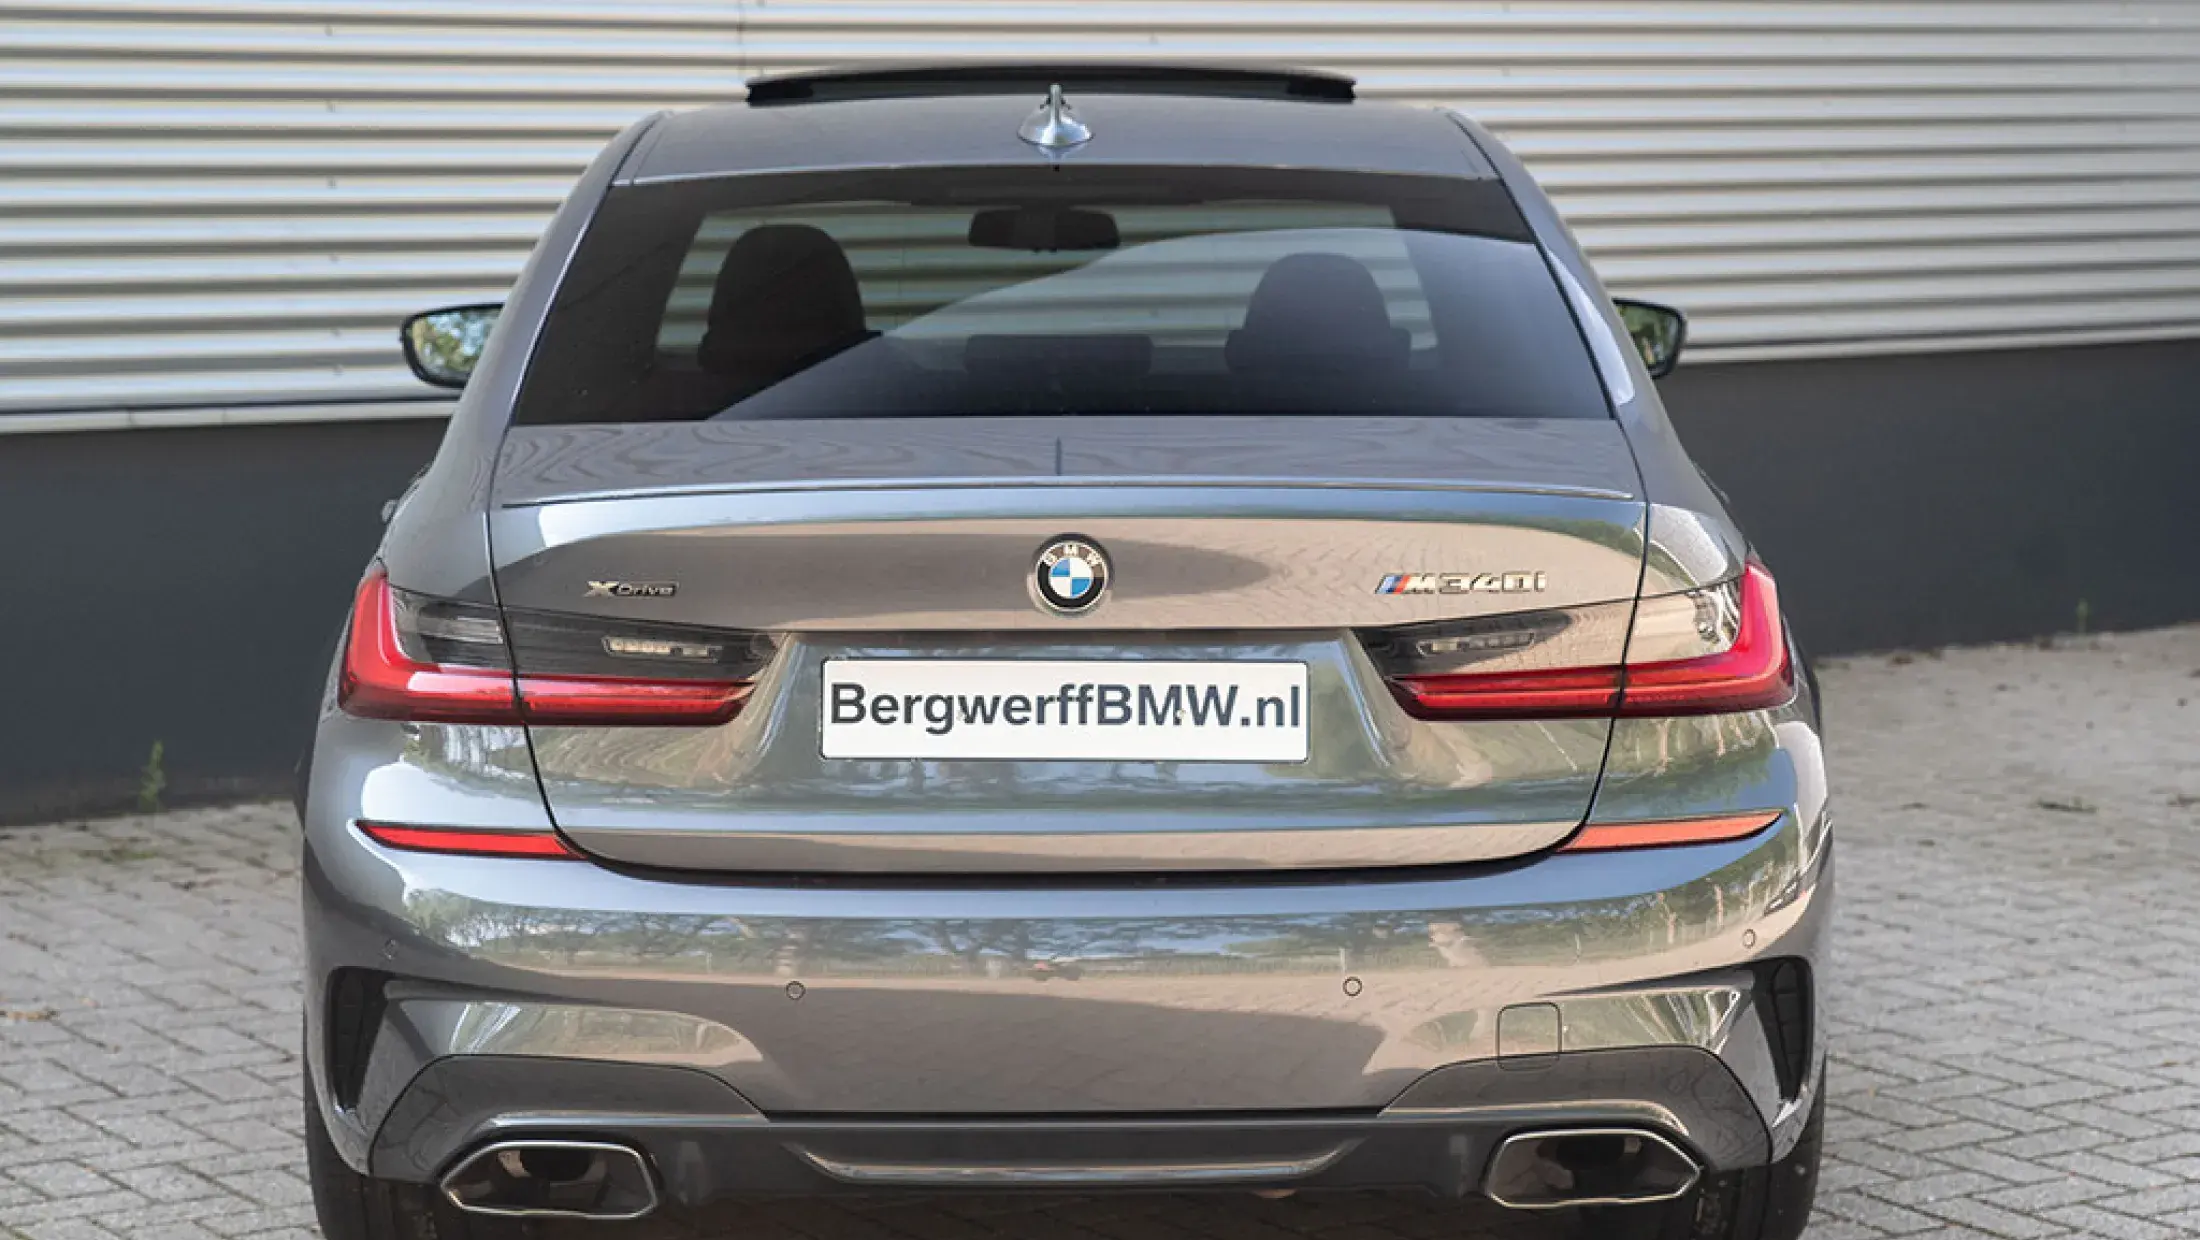 BMW M340i xDrive Mineralgrau Metallic G20 Bergwerff